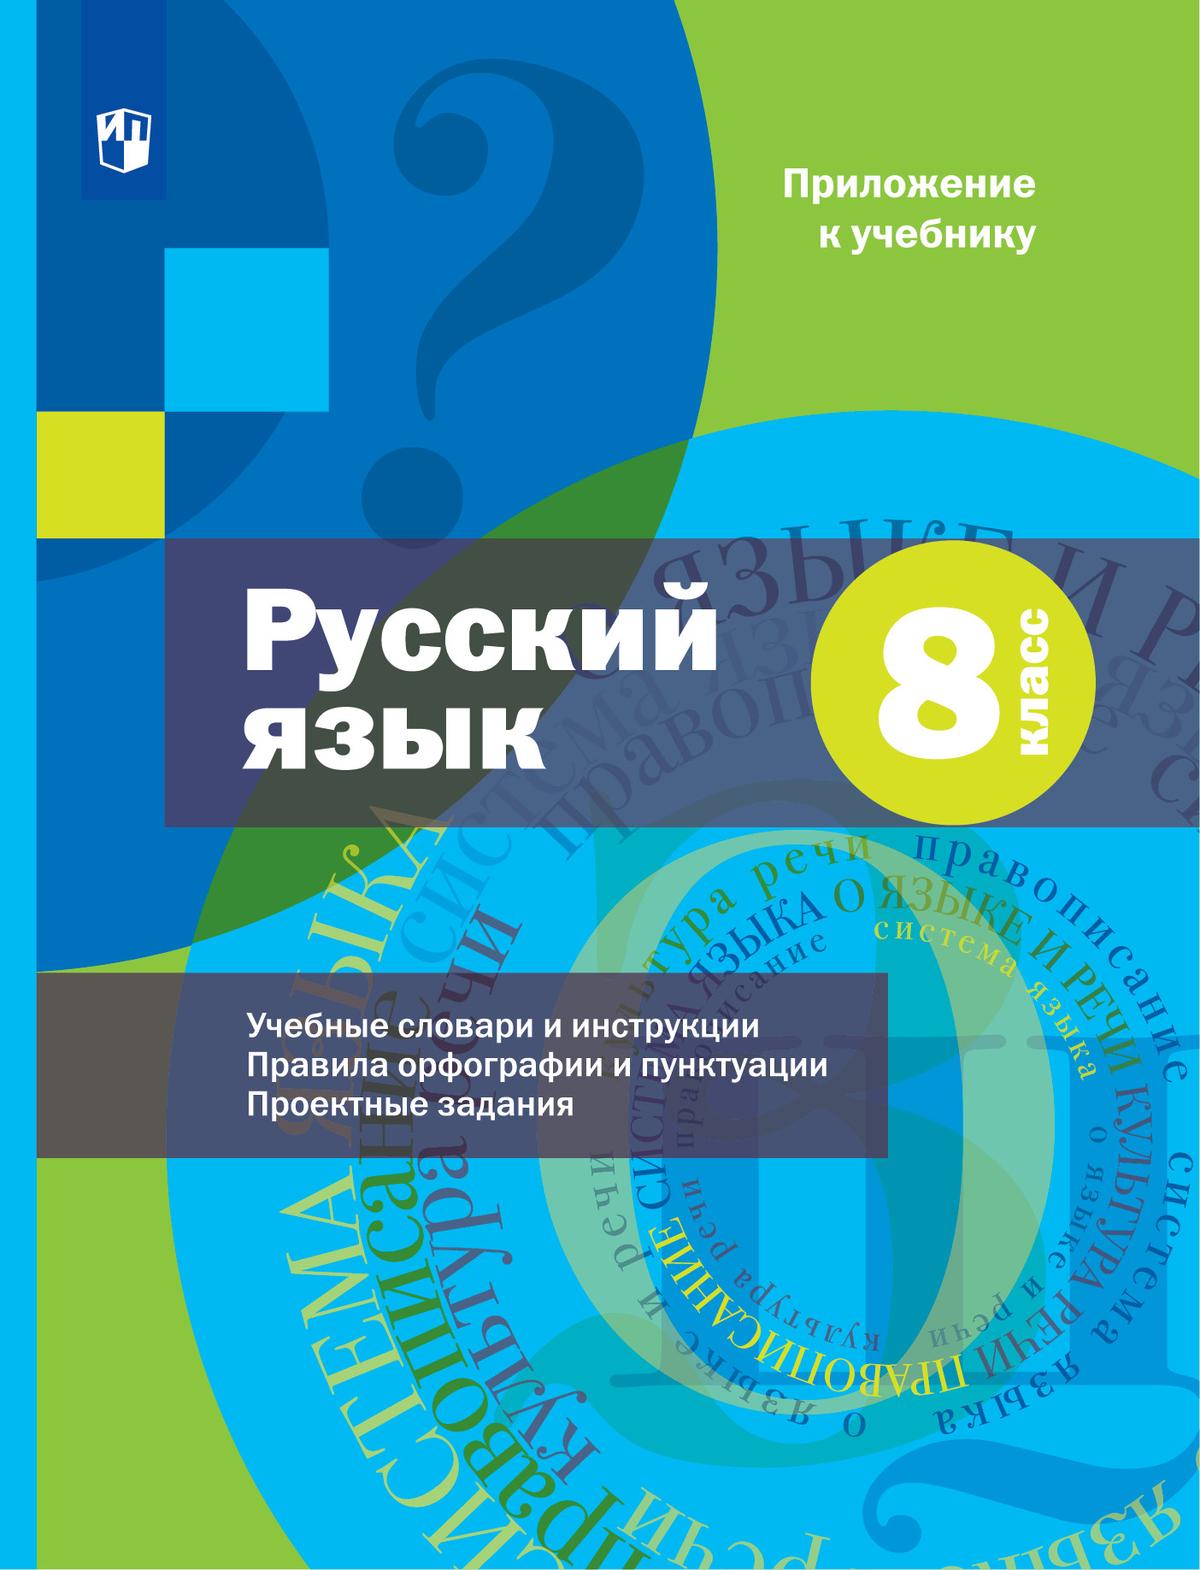 Русский язык. 8 класс. Электронная форма учебника. Комплект (+ приложение) 1